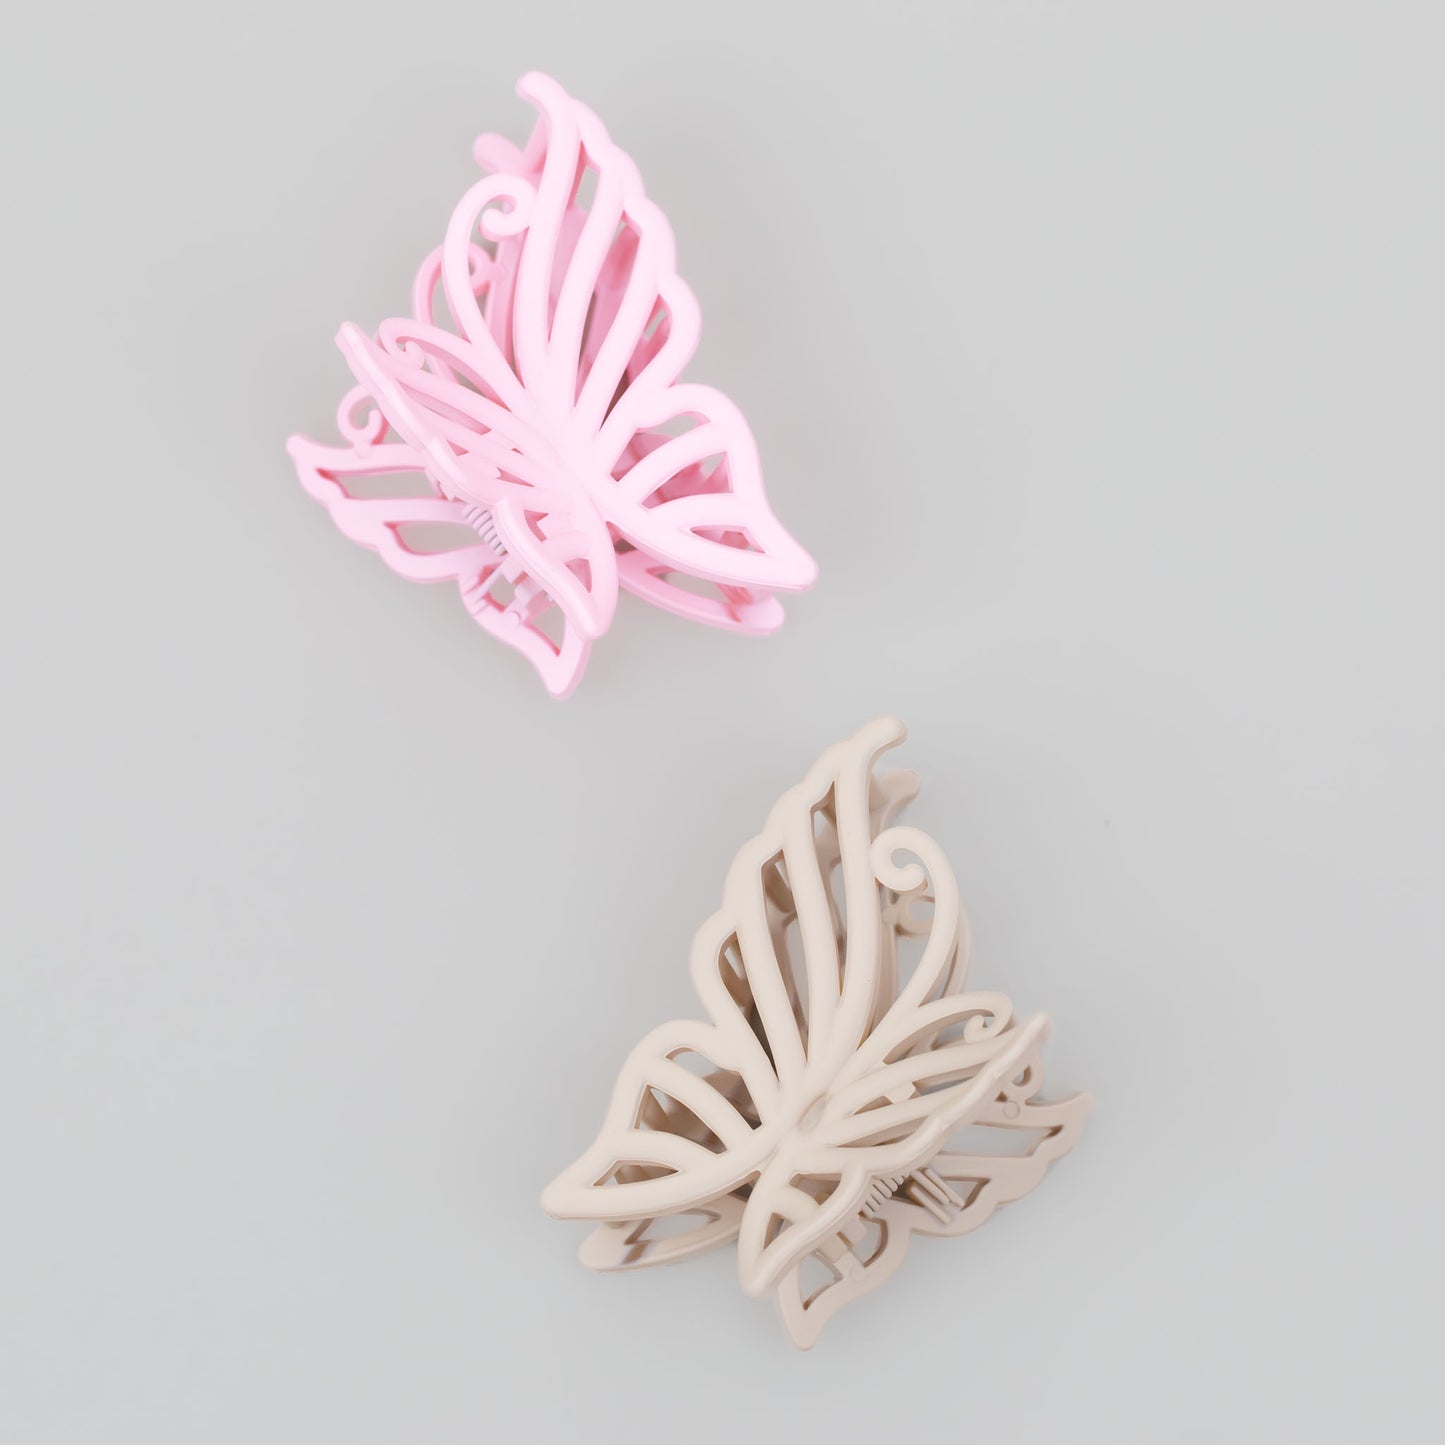 Clame de păr medii în formă de fluture cu textură de silicon, set 2 buc - Roz, Bej